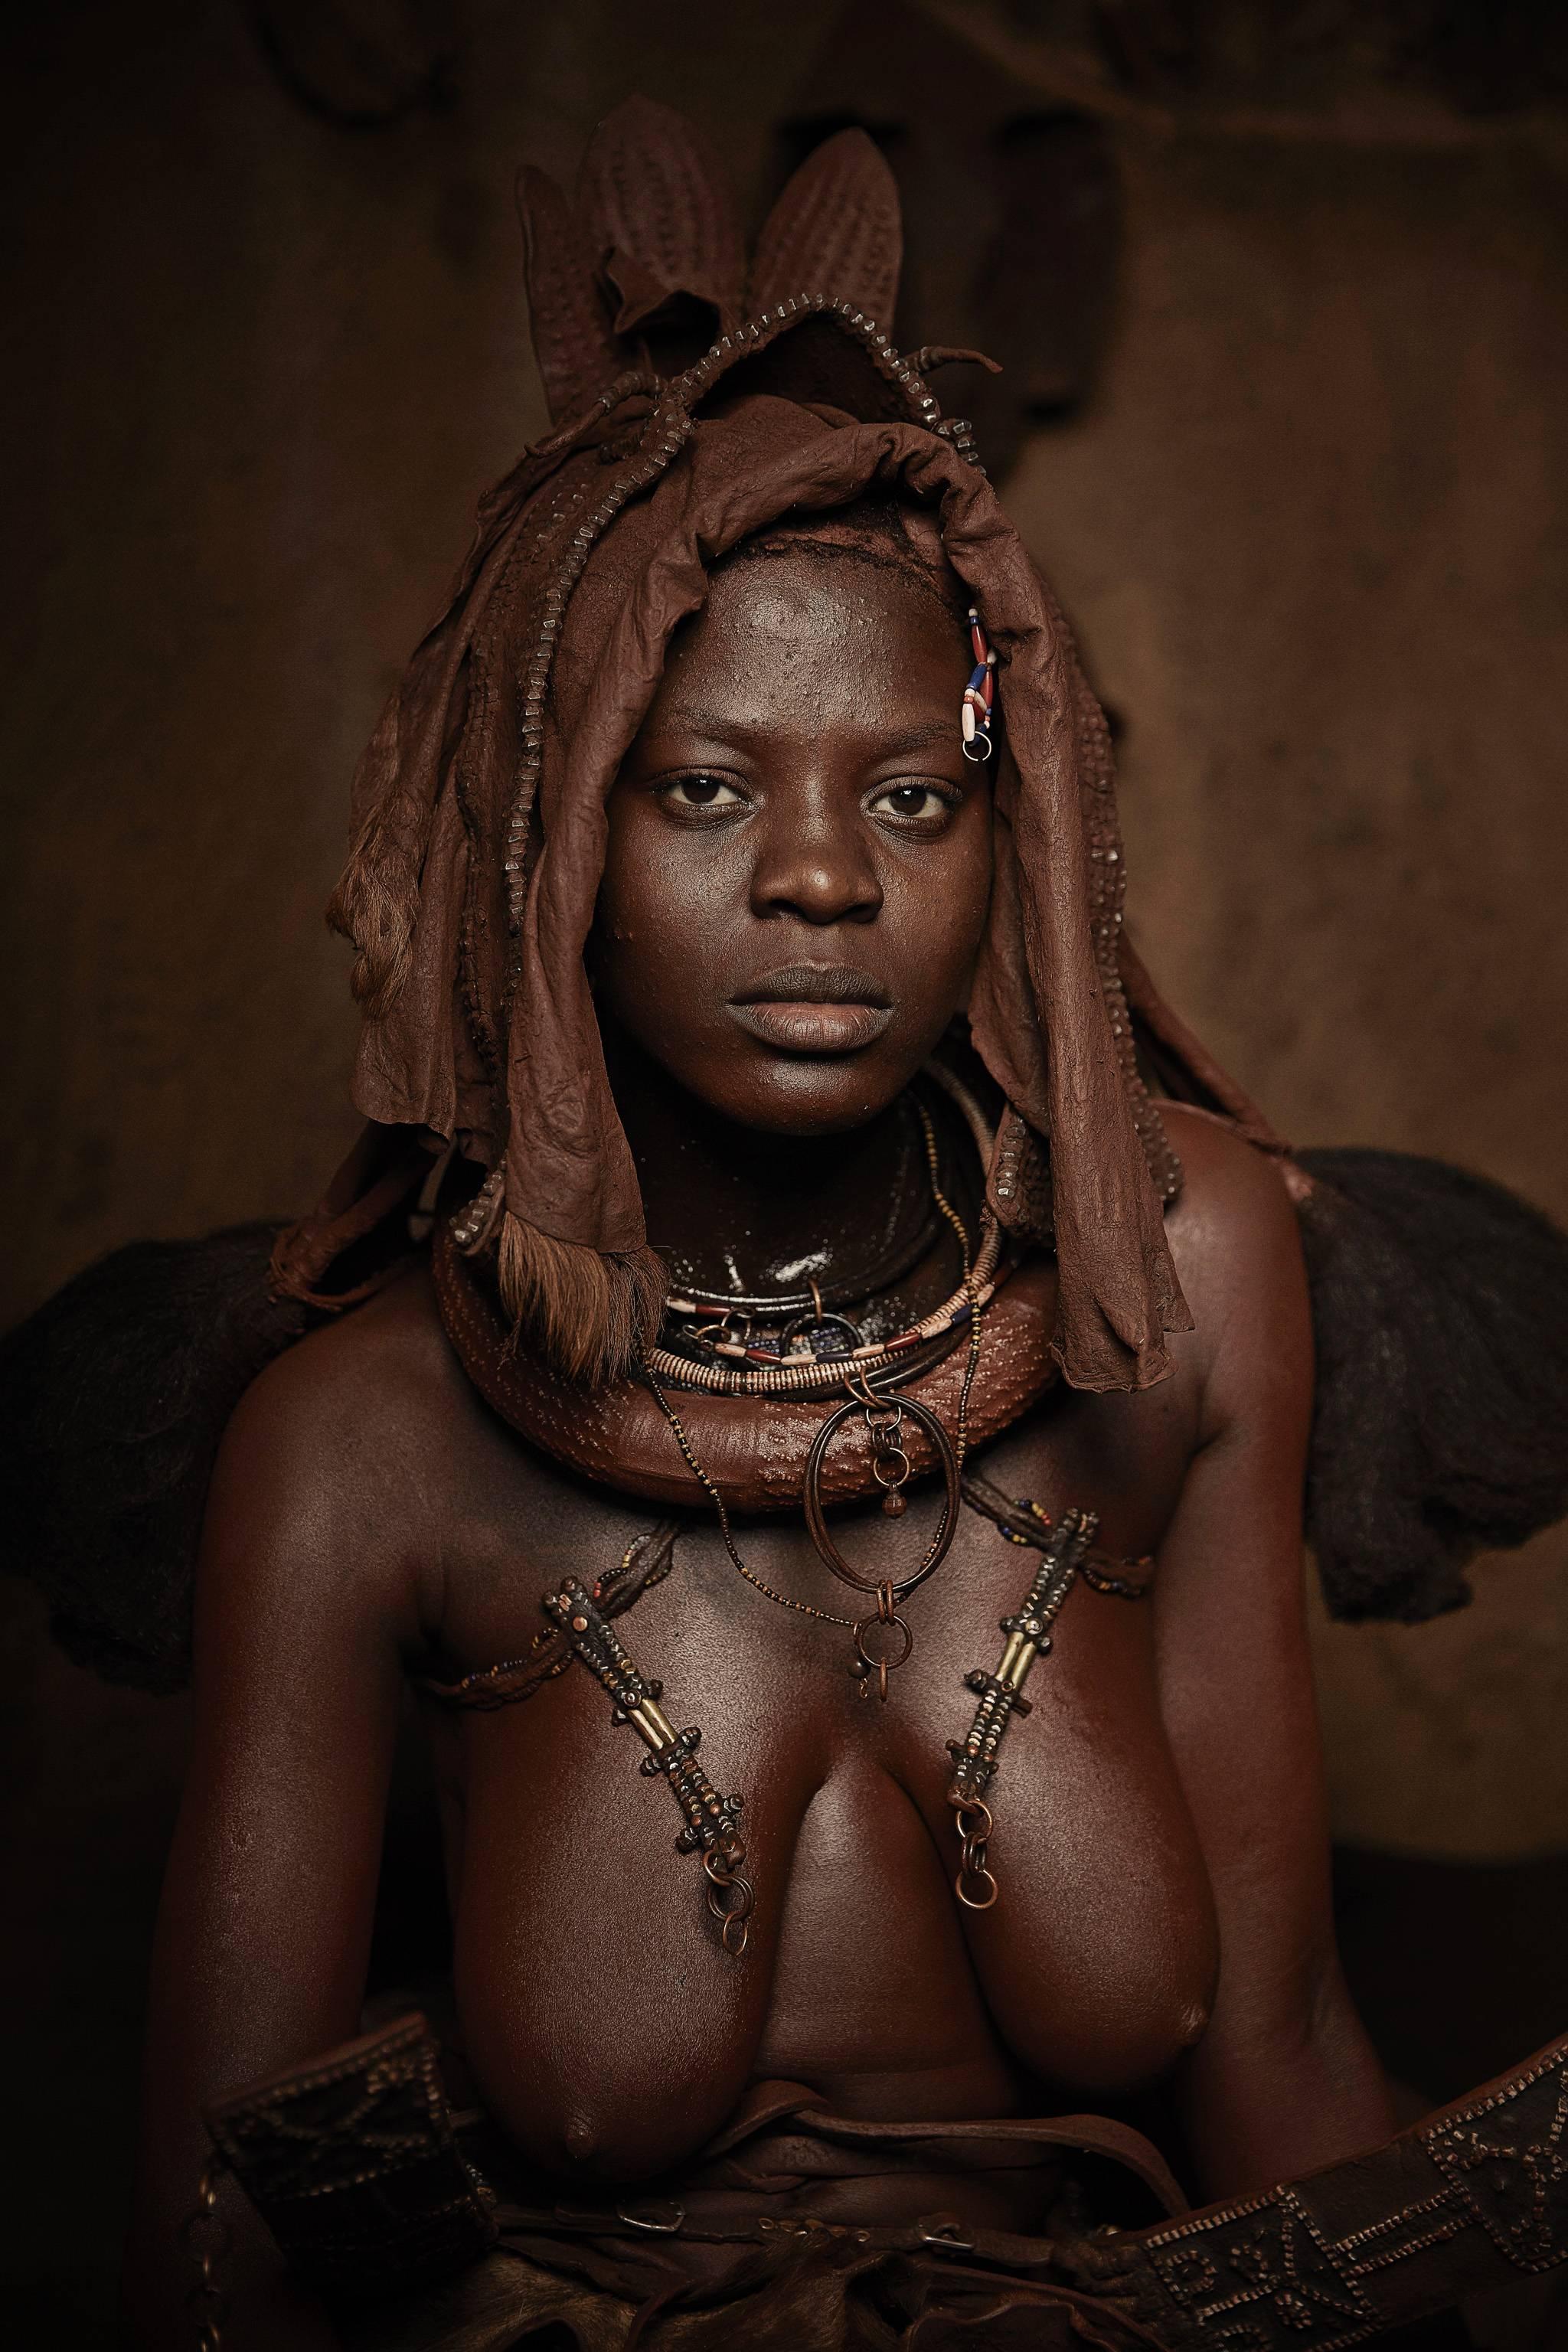 Himba Woman Epupa Falls 2, Namibia - Photograph by Chris Gordaneer